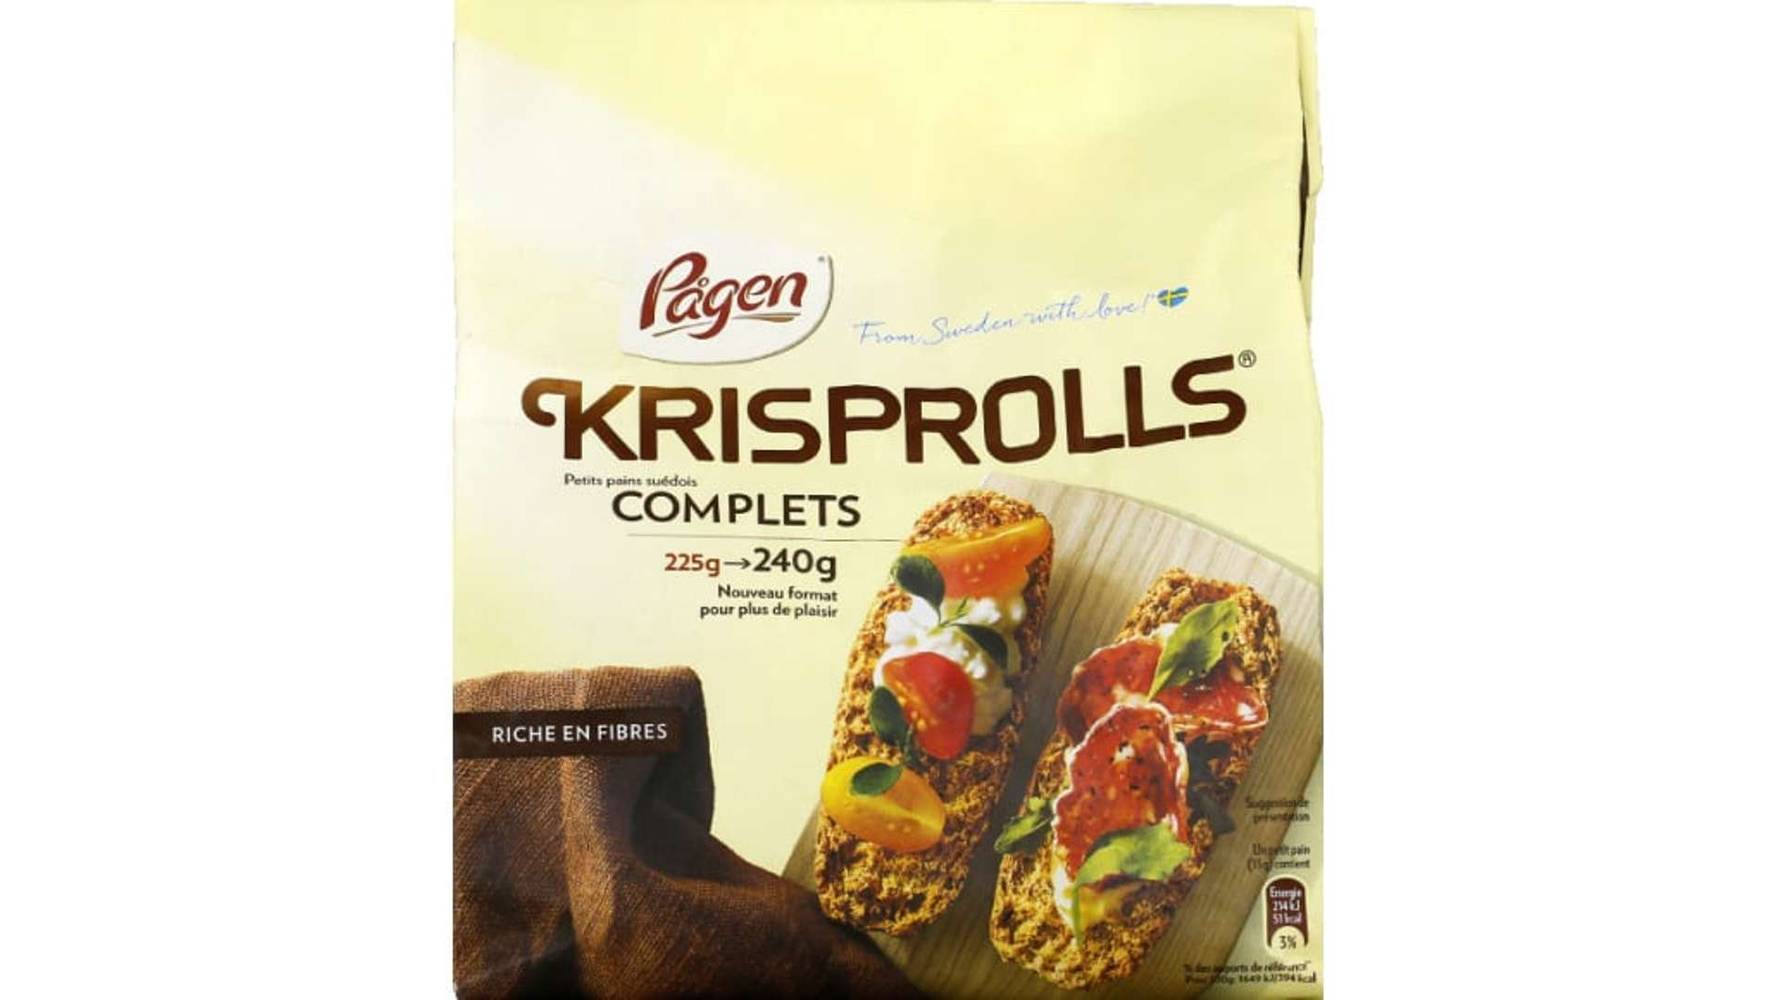 Pagen - Krisprolls petits pains complets